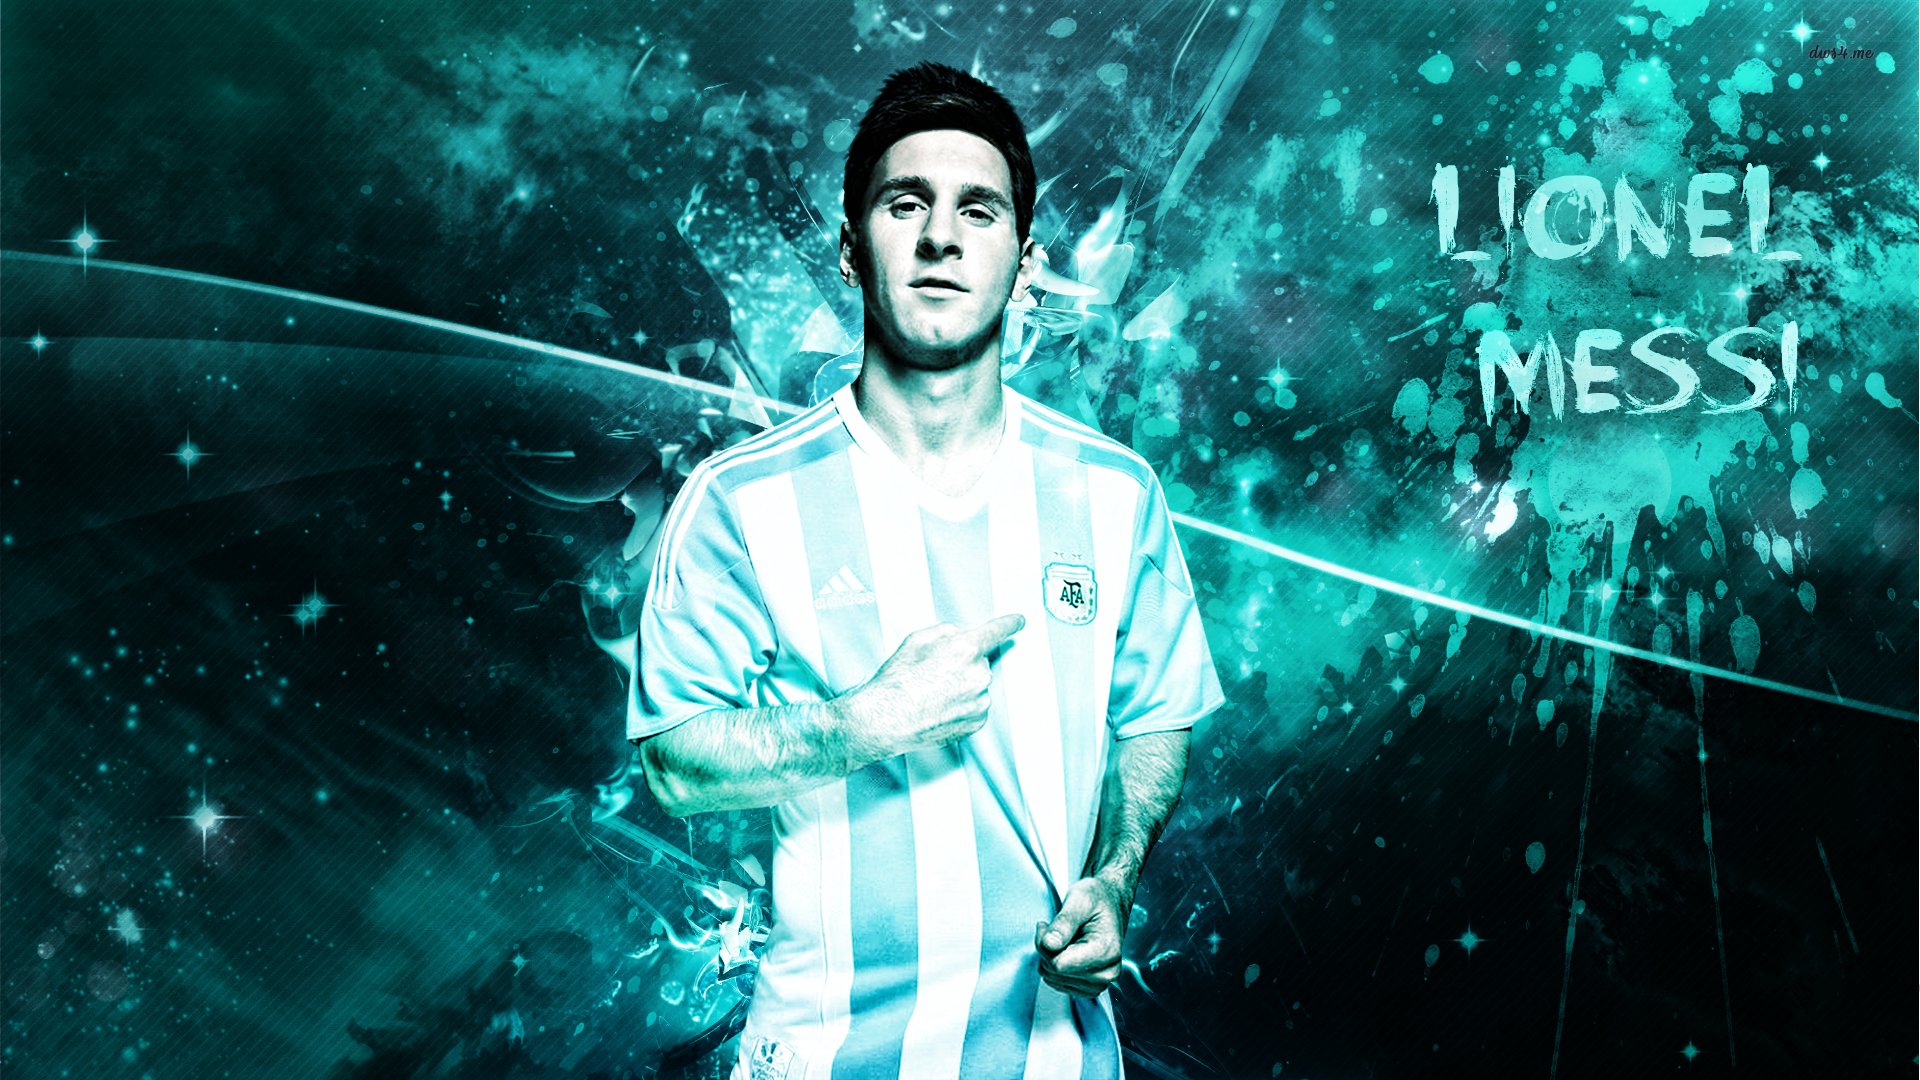 Messi 2015 wallpaper by ricardodossantos